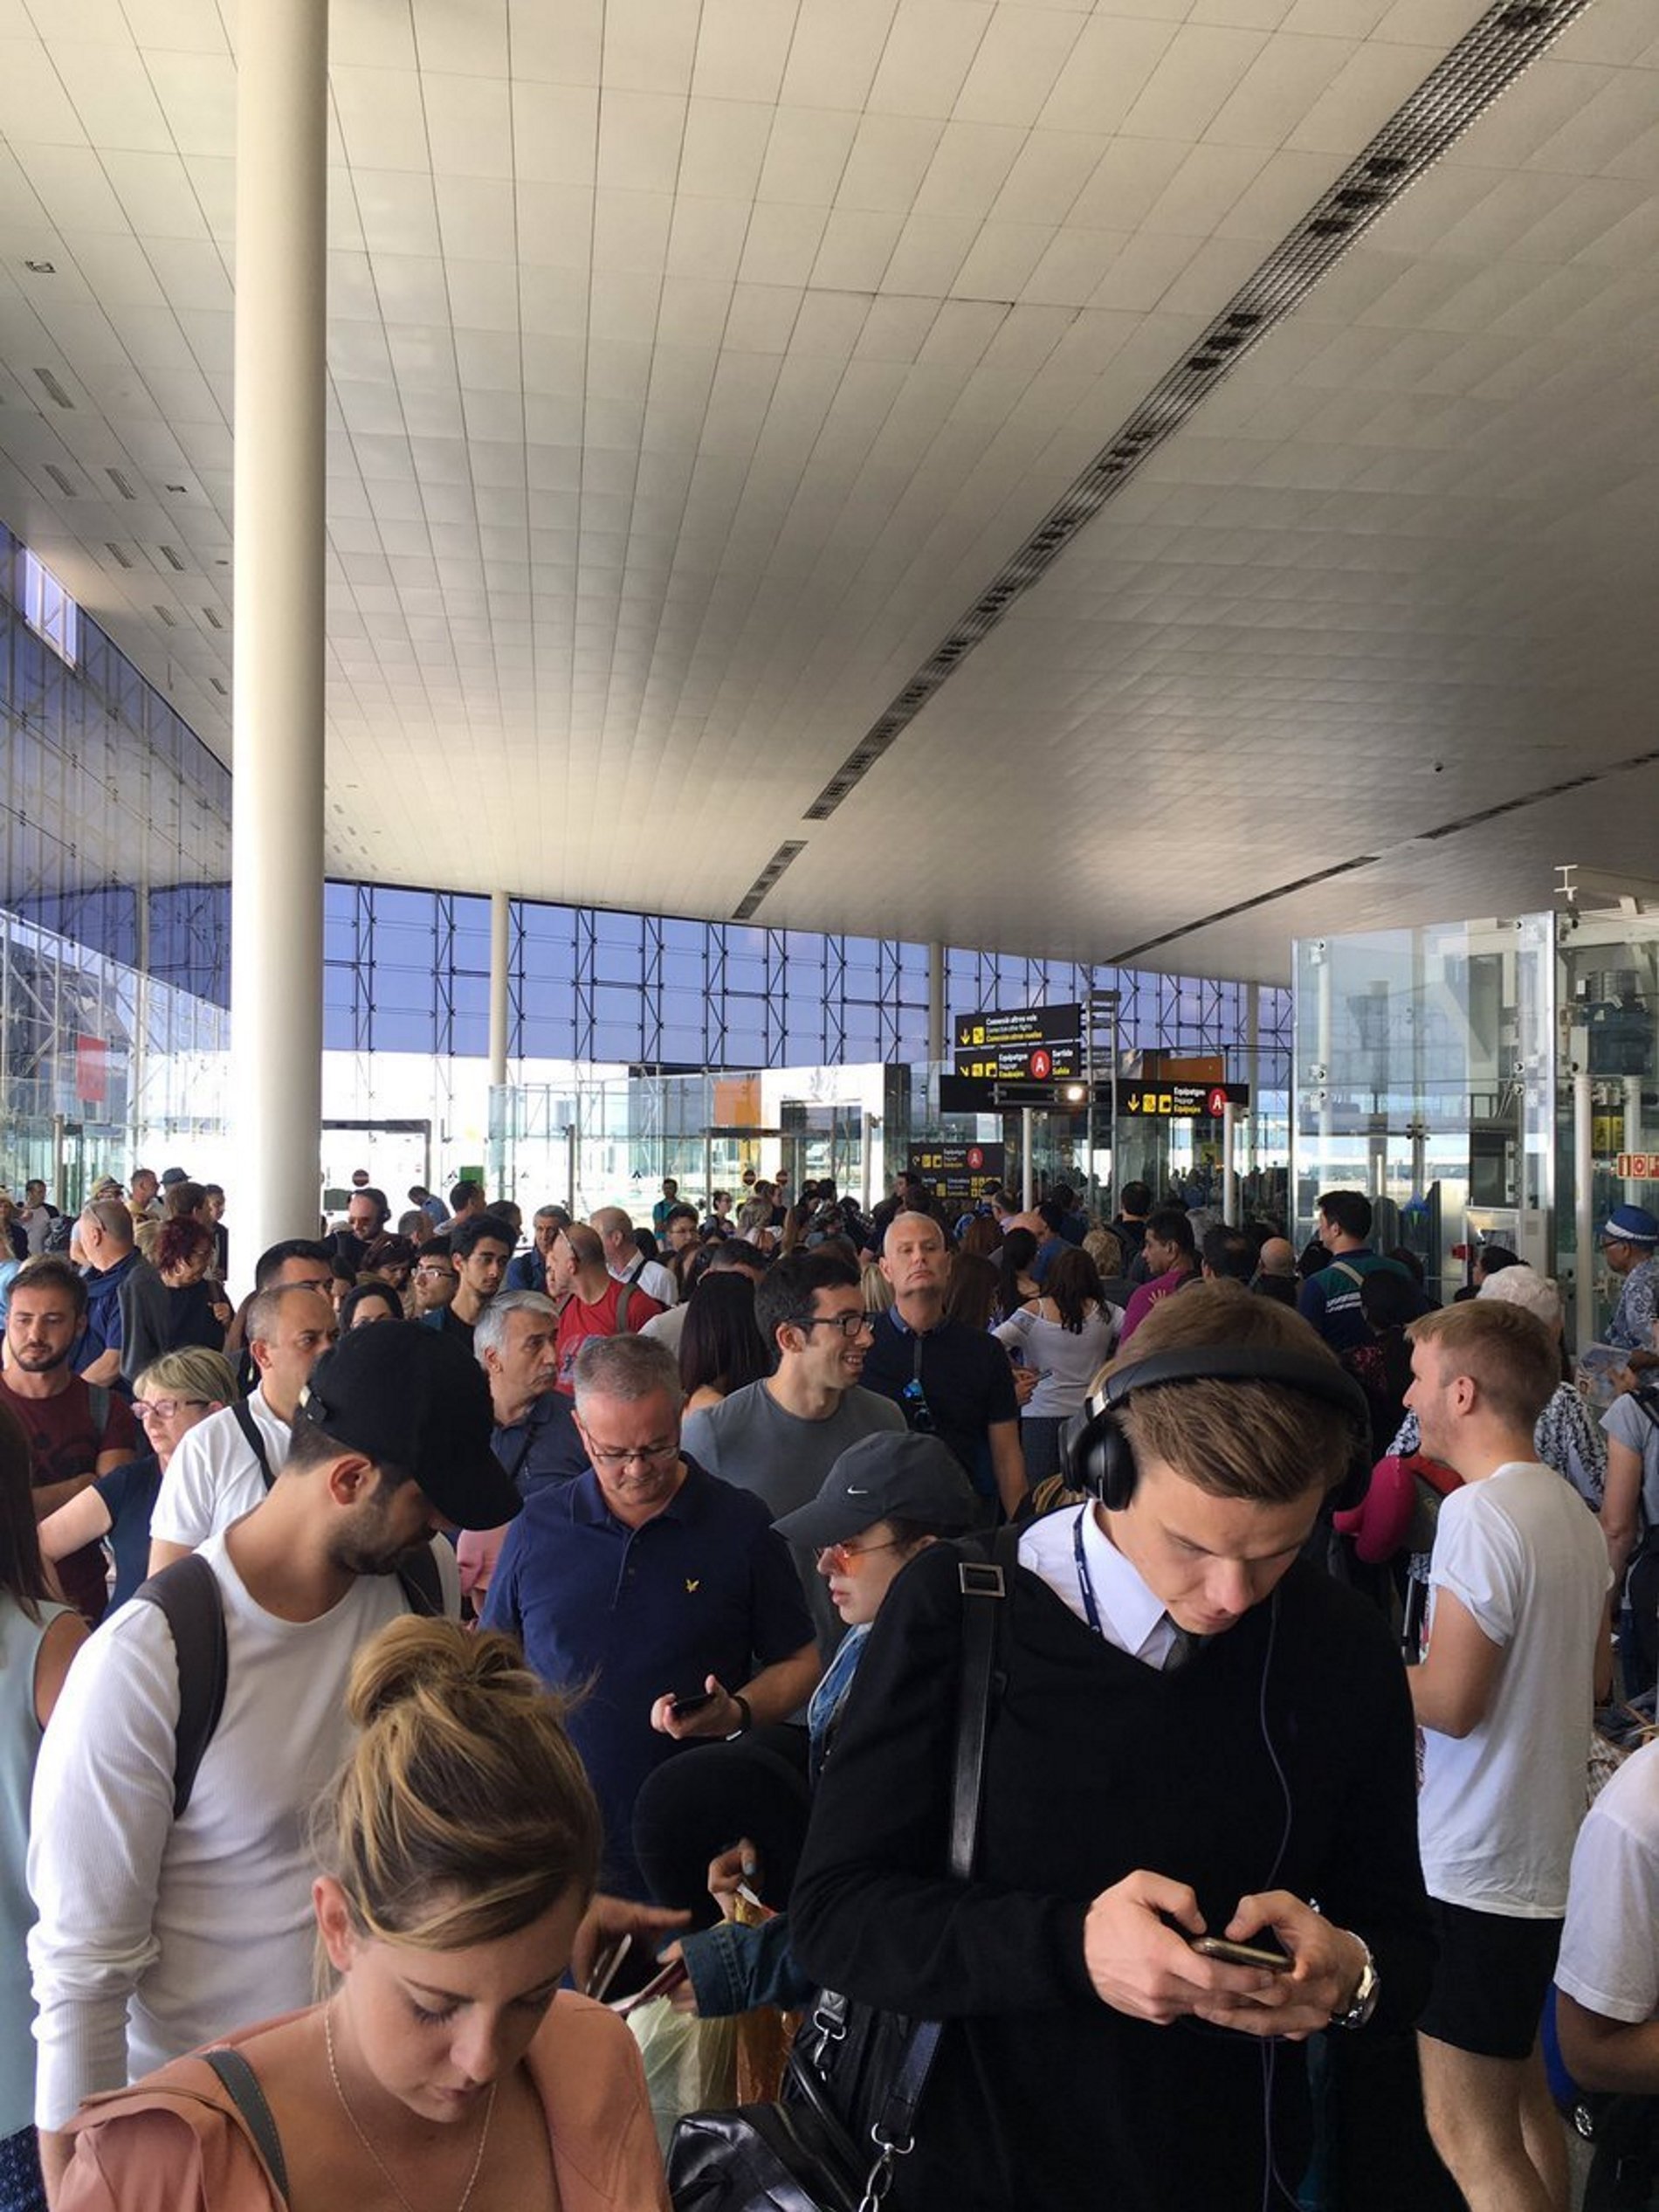 Tornen les queixes per cues a l'aeroport de Barcelona